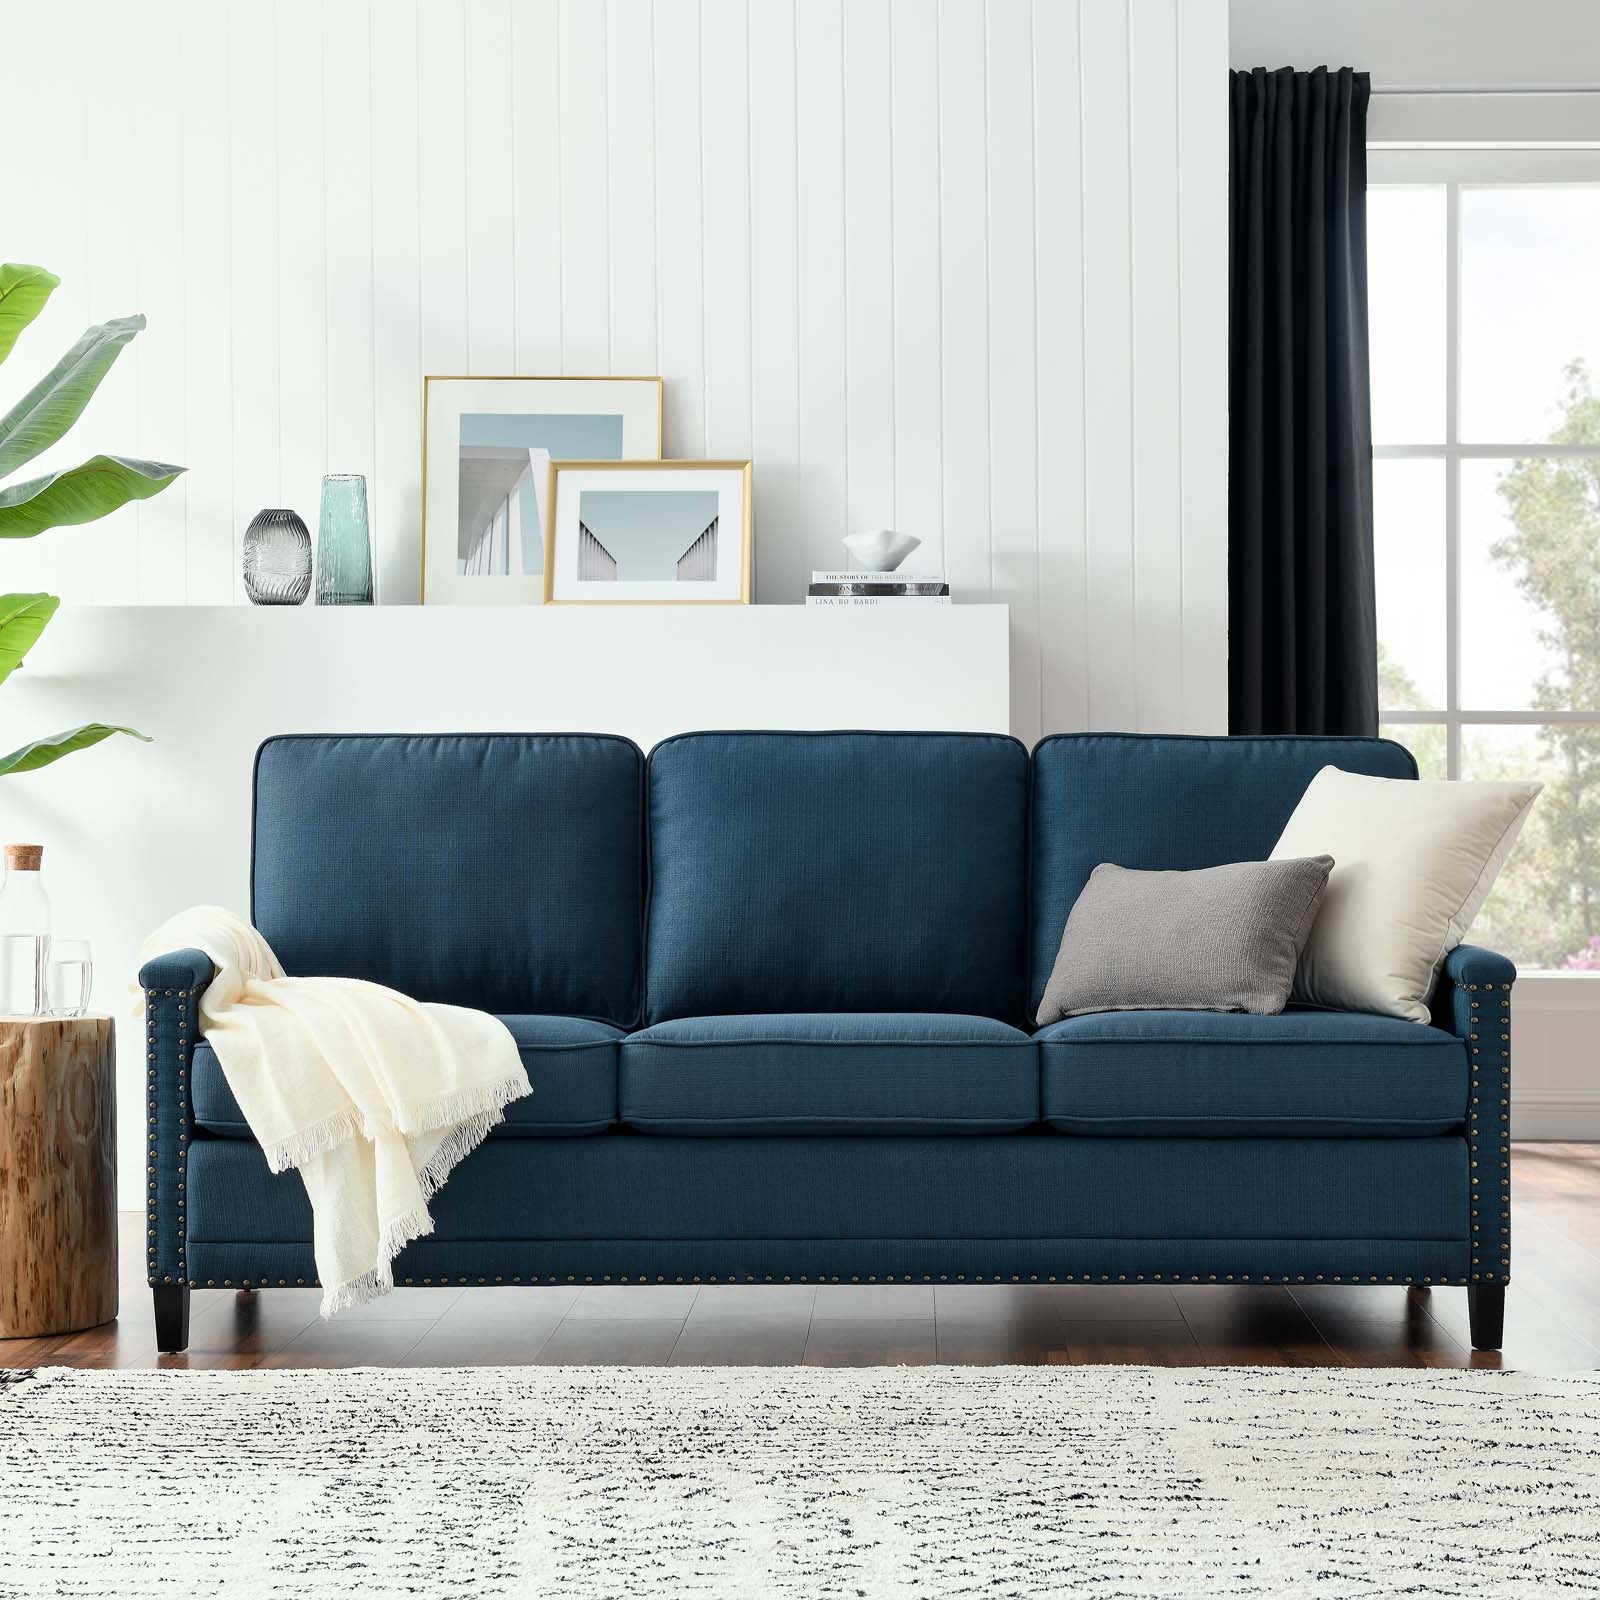 Ashton Upholstered Fabric Sofa - East Shore Modern Home Furnishings